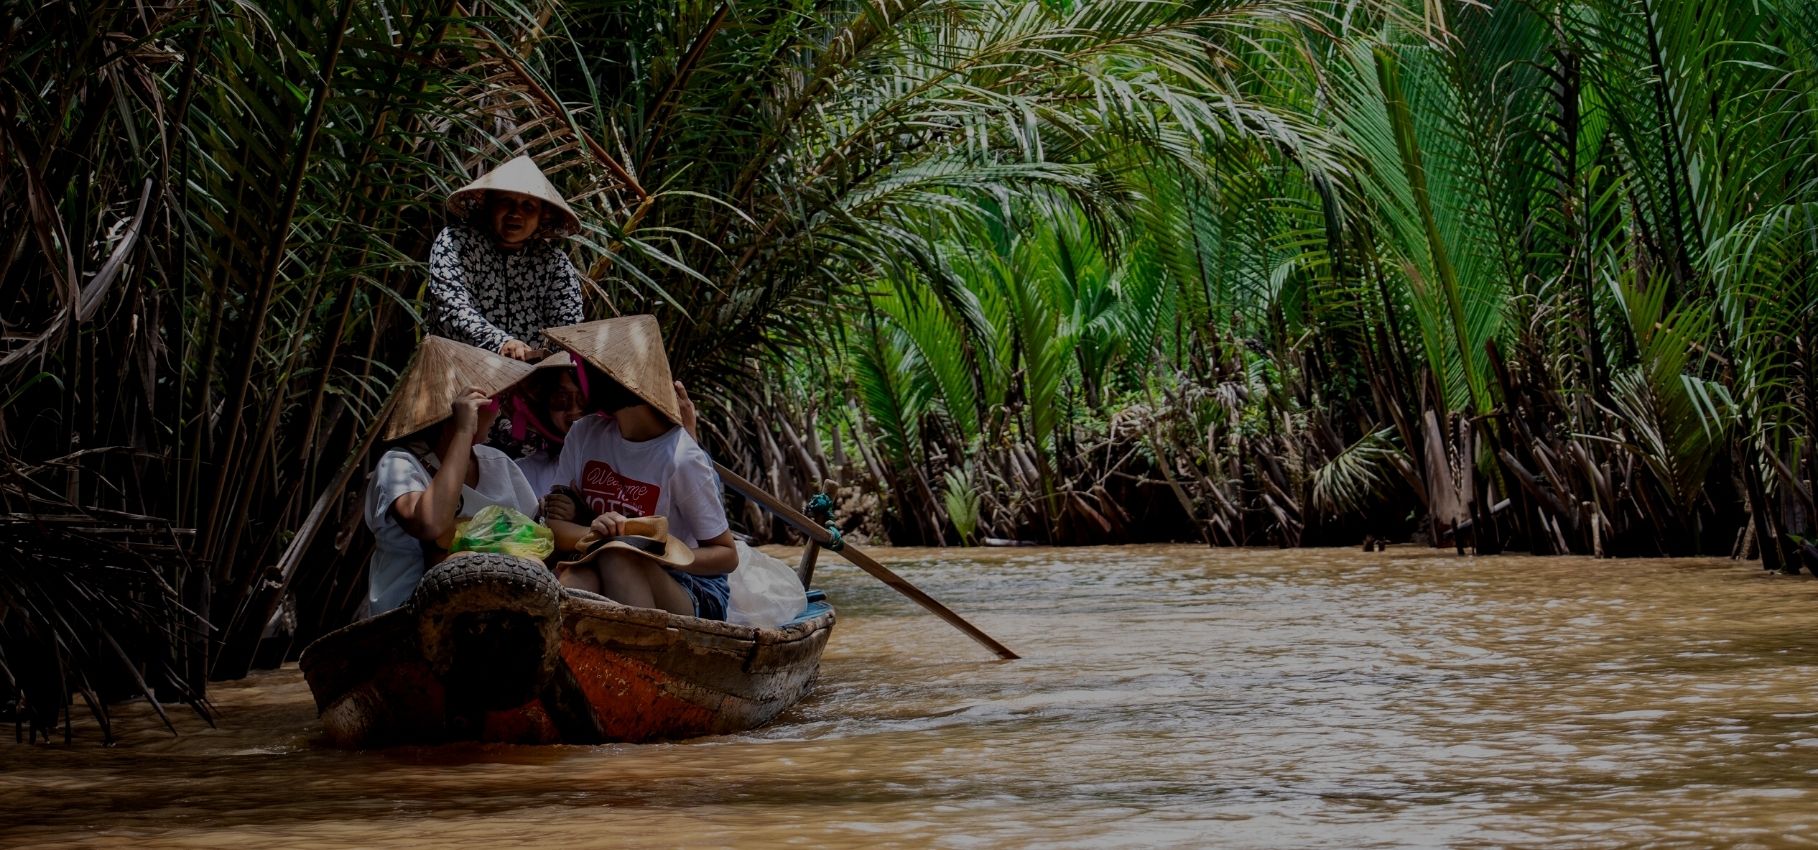 Visiting Mekong Delta, Vietnam